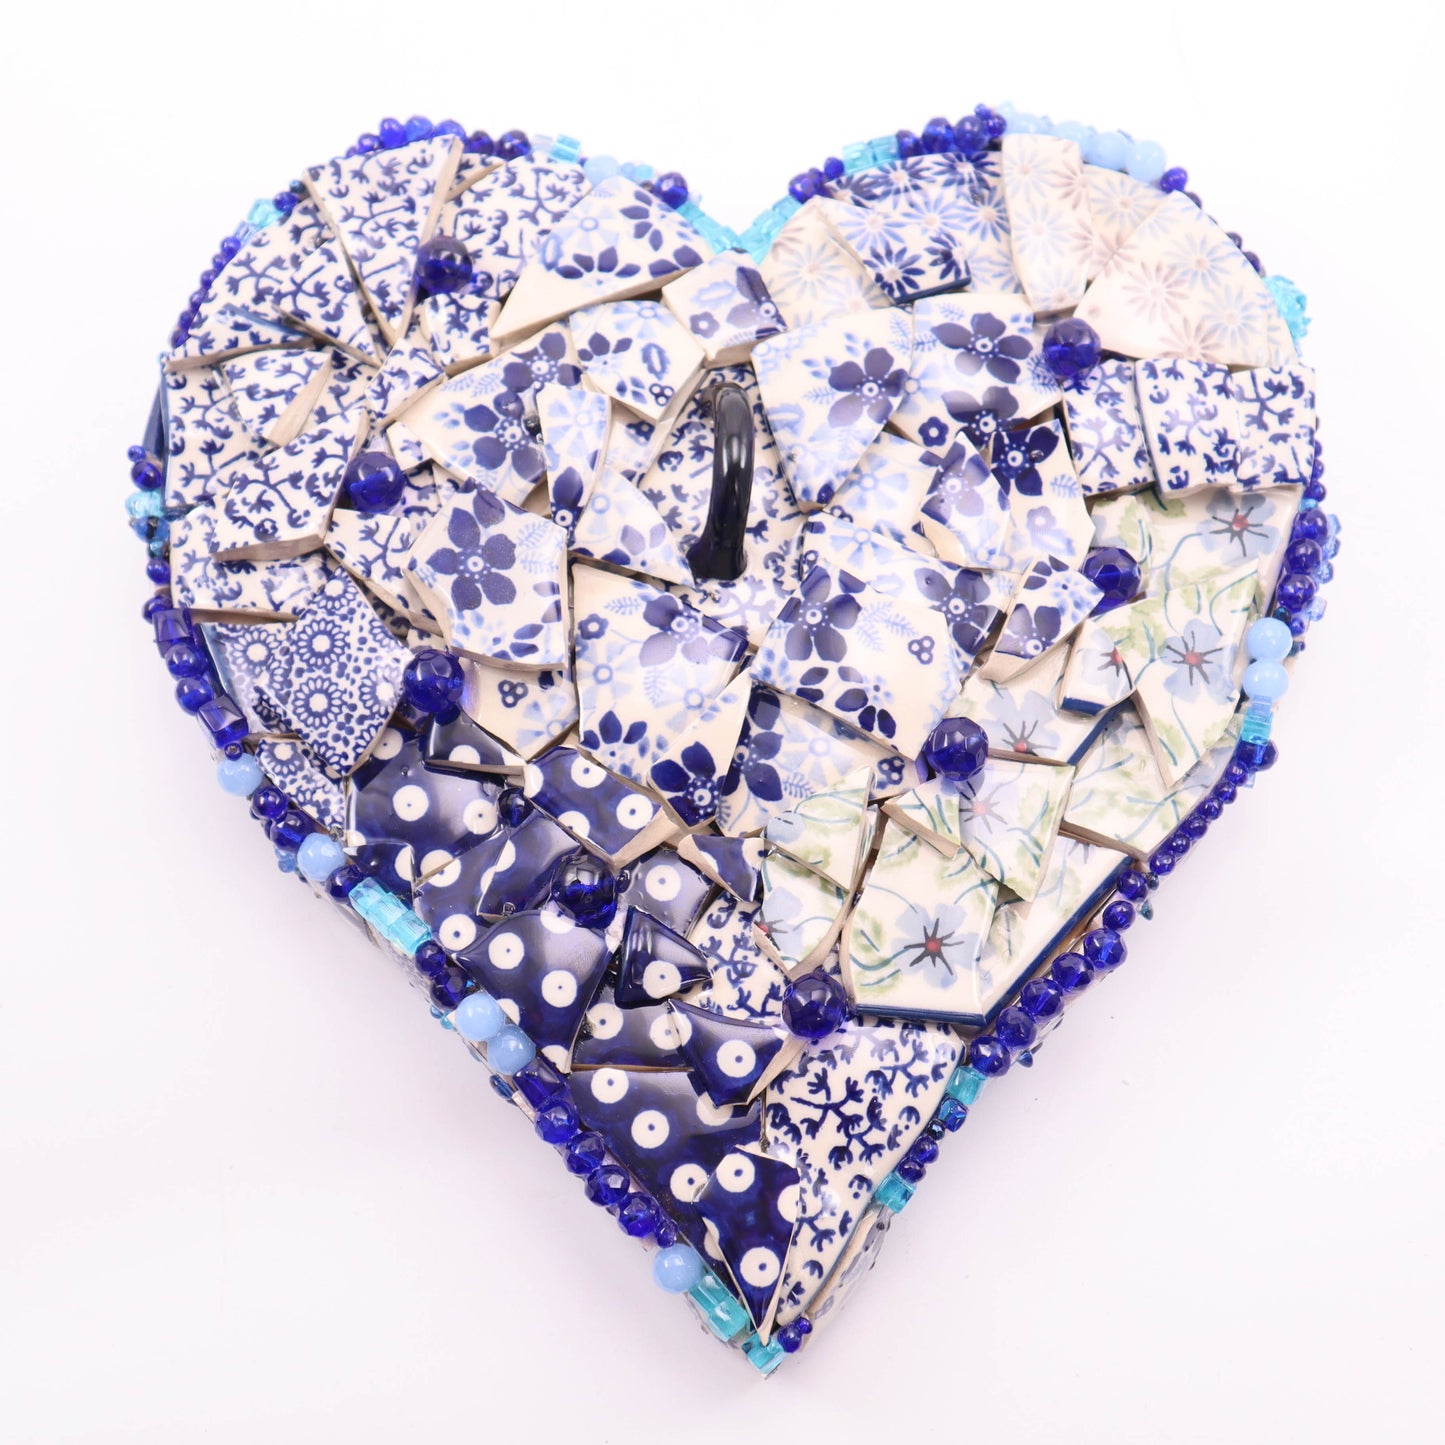 11"x12" Mosaic Heart. Pattern: A